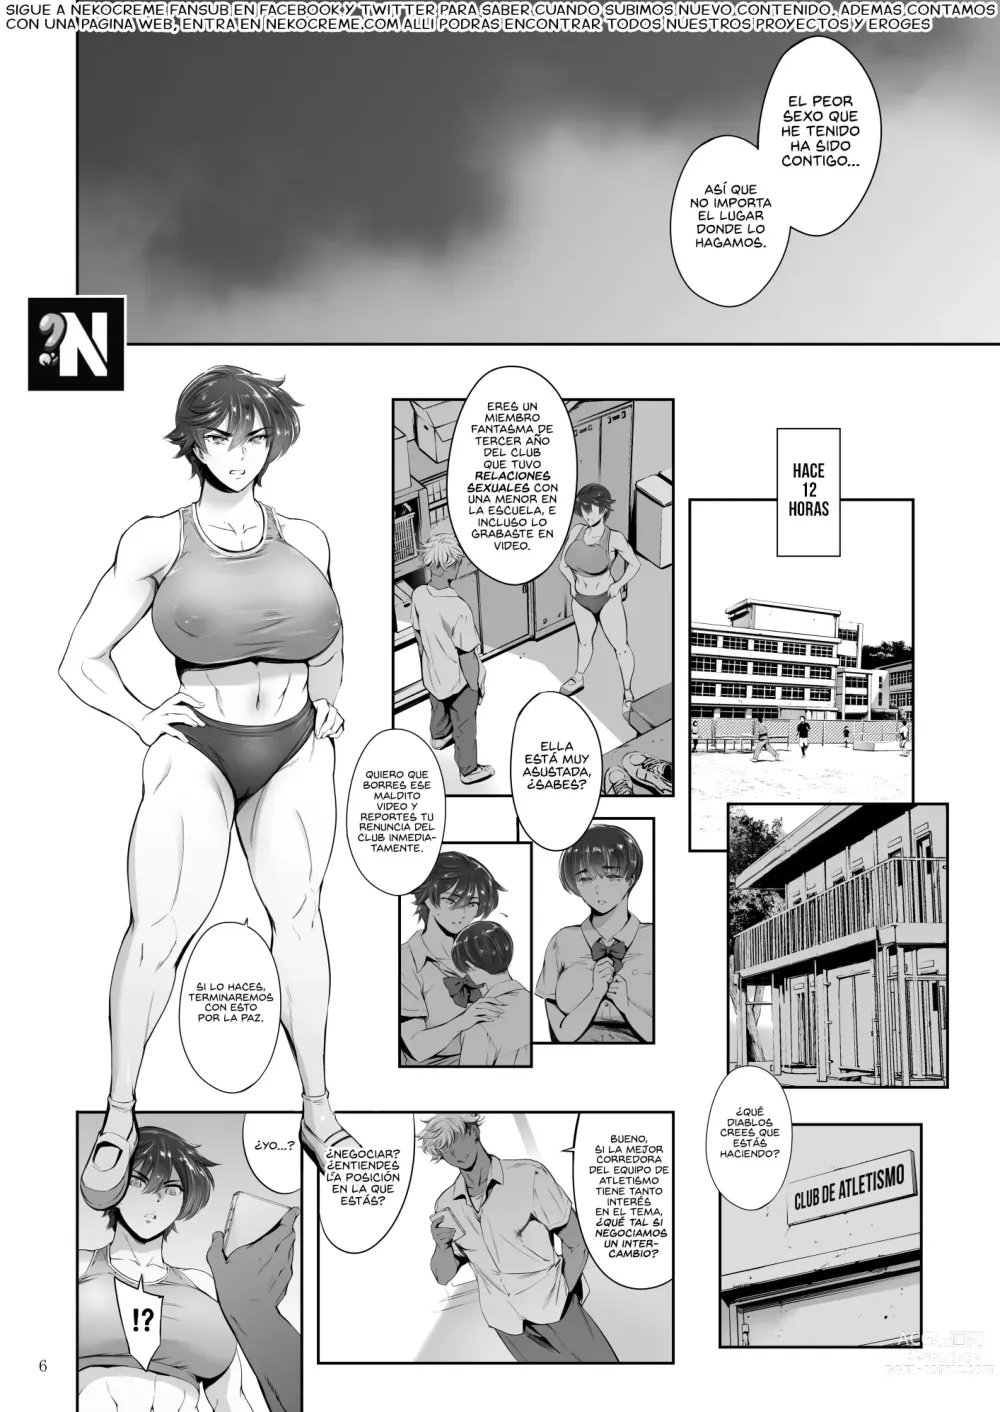 Page 6 of doujinshi Mujer Corredora